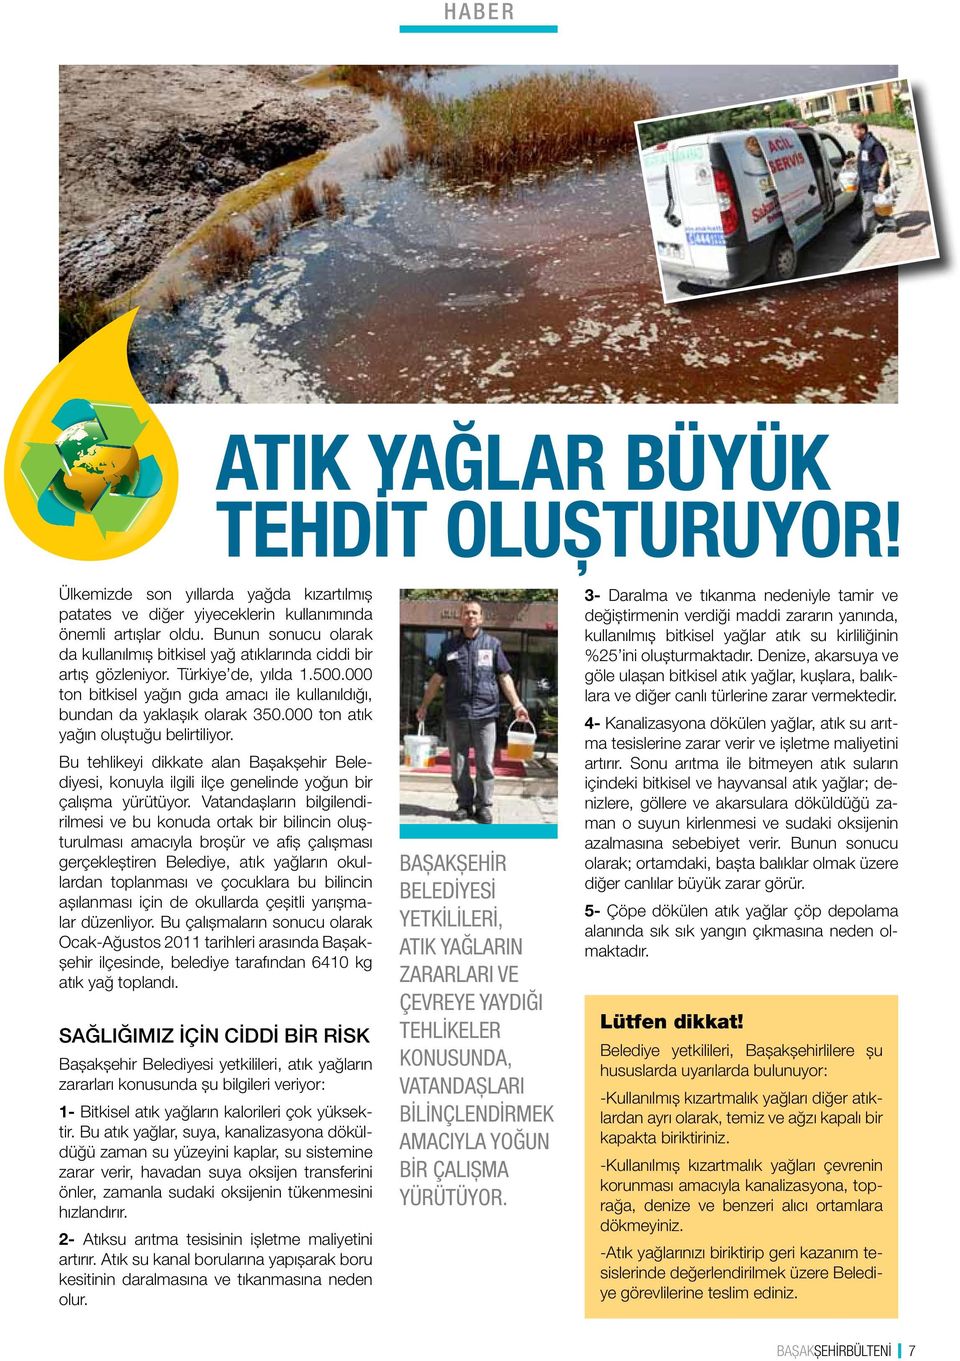 000 ton atık yağın oluştuğu belirtiliyor. Bu tehlikeyi dikkate alan Başakşehir Belediyesi, konuyla ilgili ilçe genelinde yoğun bir çalışma yürütüyor.